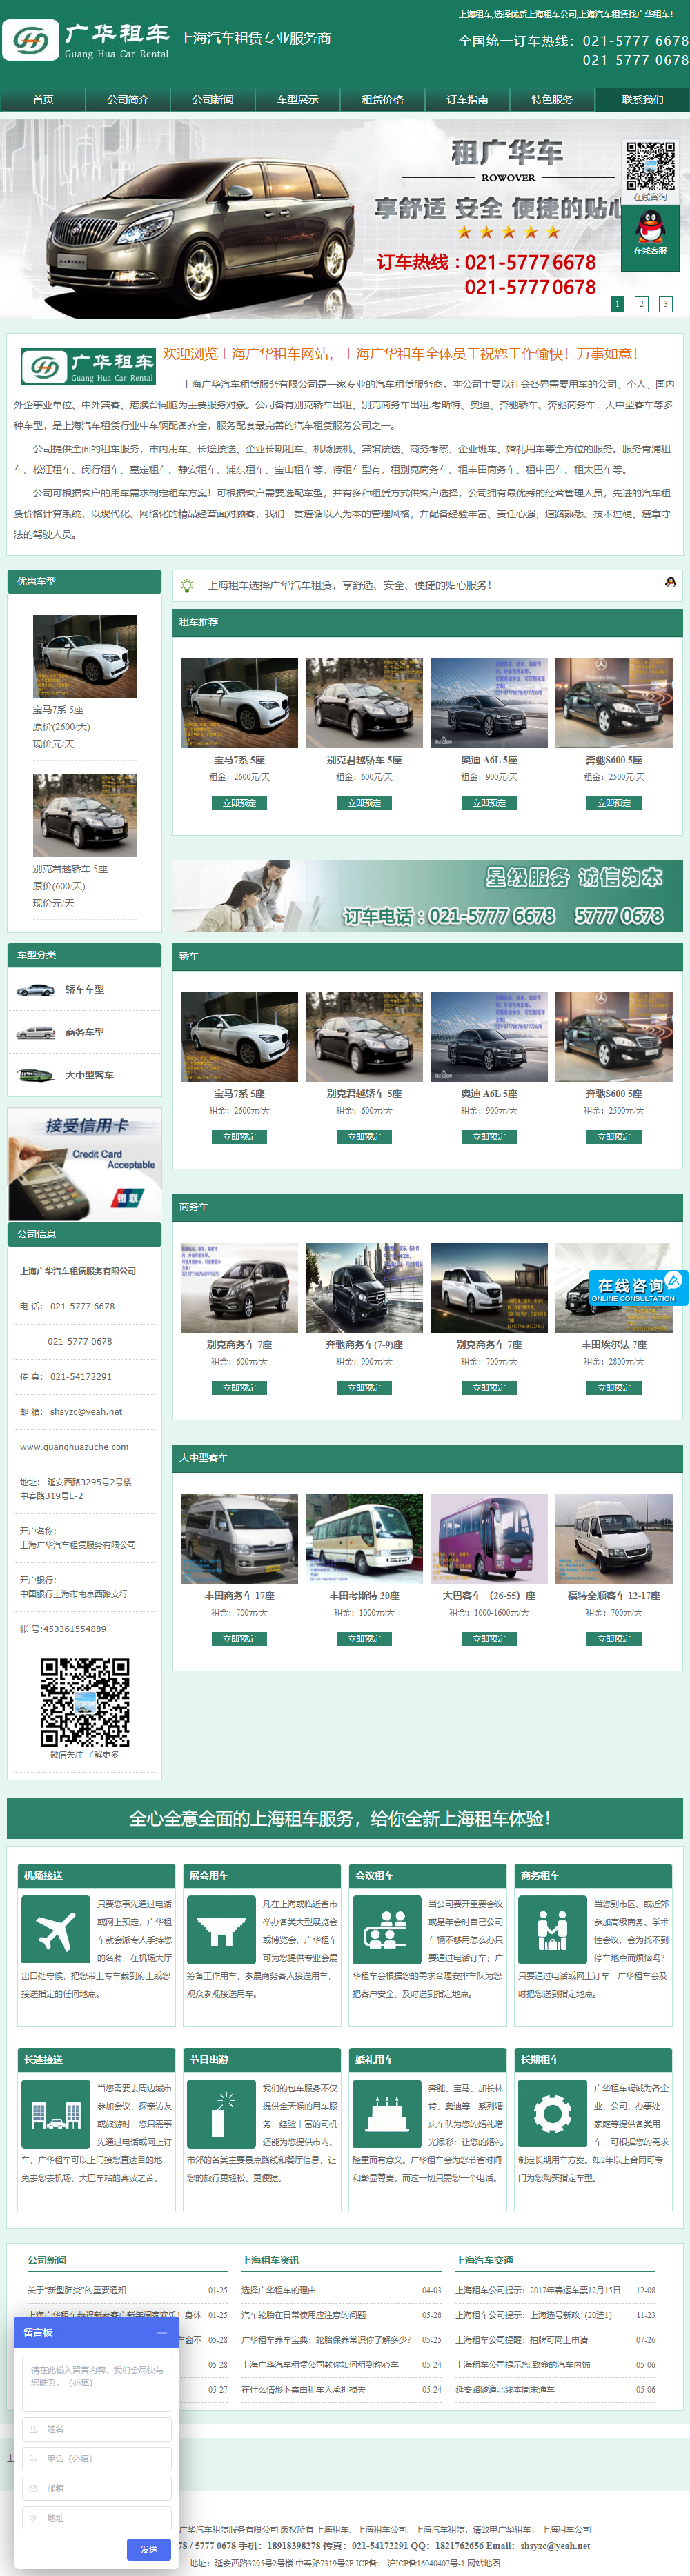 上海广华汽车租赁服务有限公司网站案例